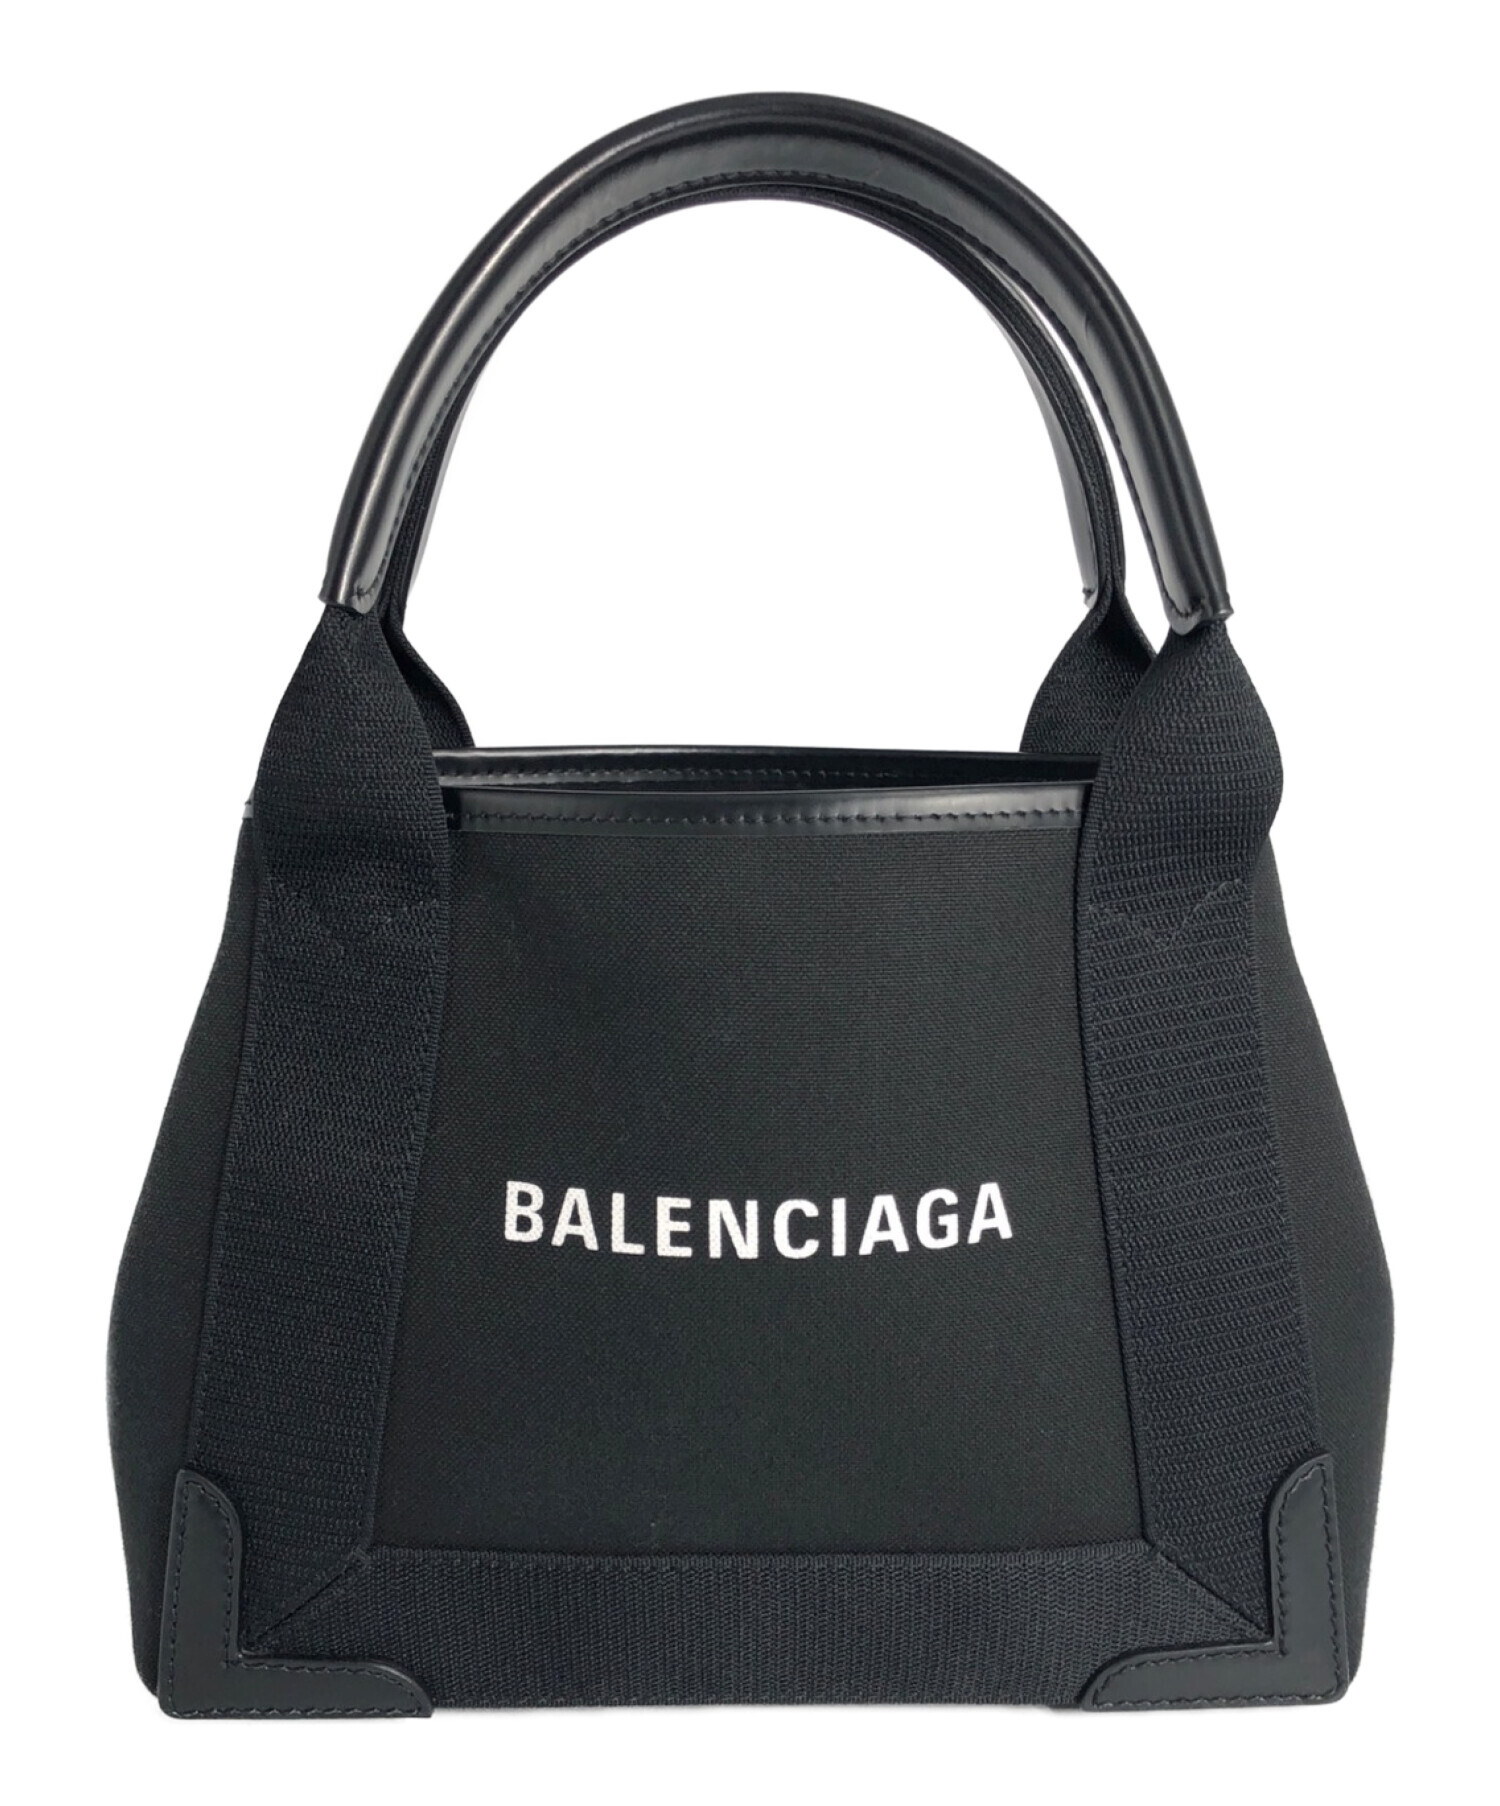 BALENCIAGA (バレンシアガ) カバスXS ブラック×ホワイト